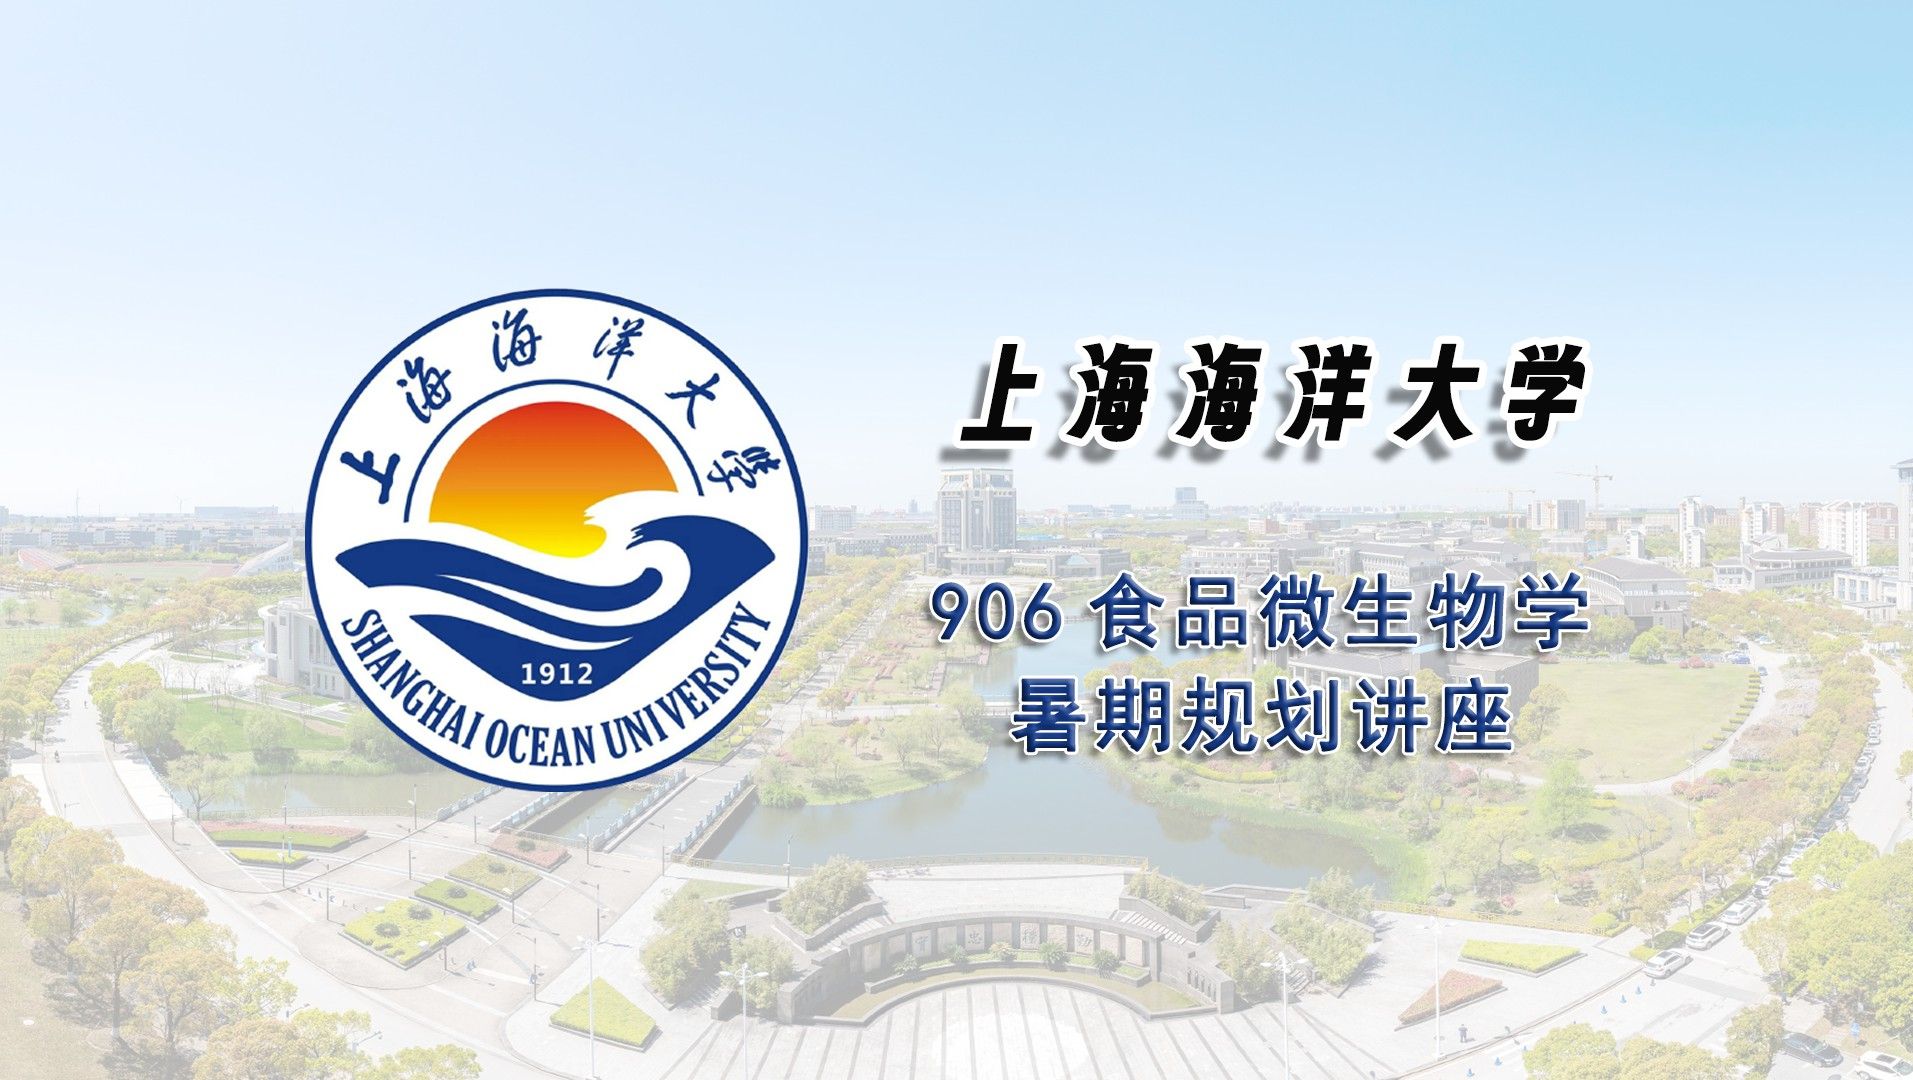 【25考研暑期讲座】上海海洋大学906食品微生物学考研暑期经验分享